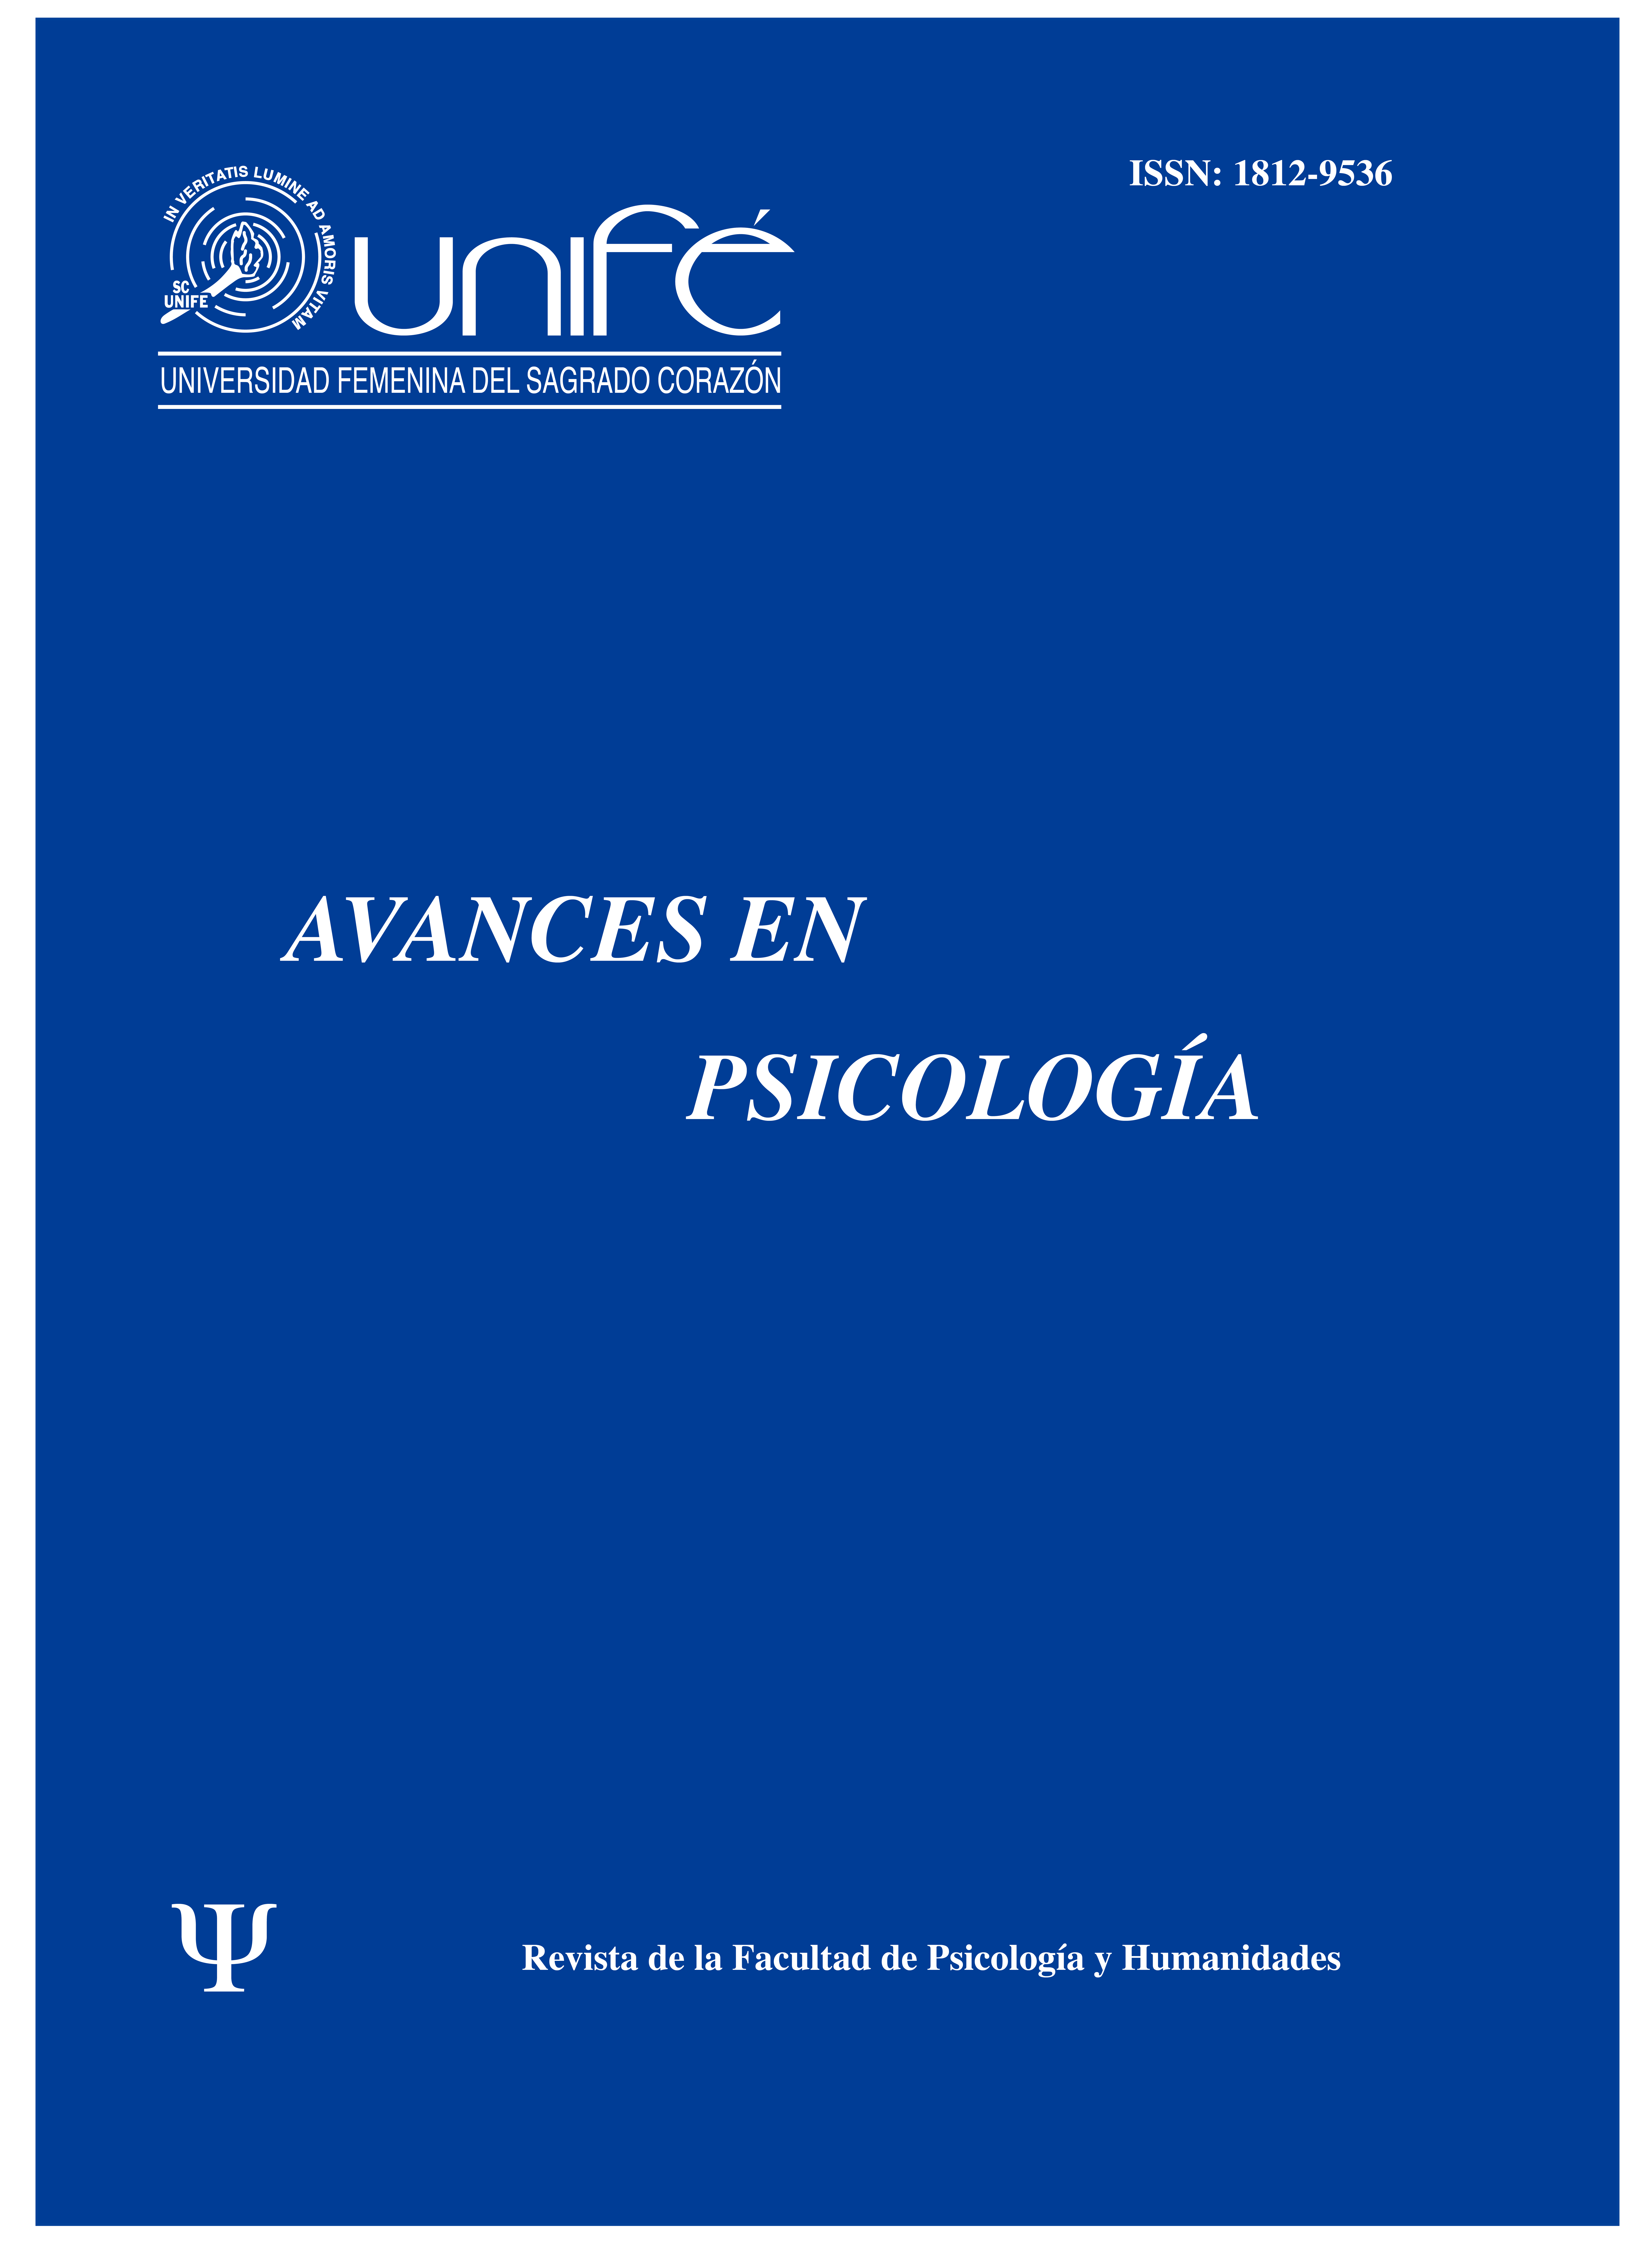 					Ver Vol. 27 Núm. 1 (2019): Avances en Psicología: Revista de la Facultad de Psicología y Humanidades
				